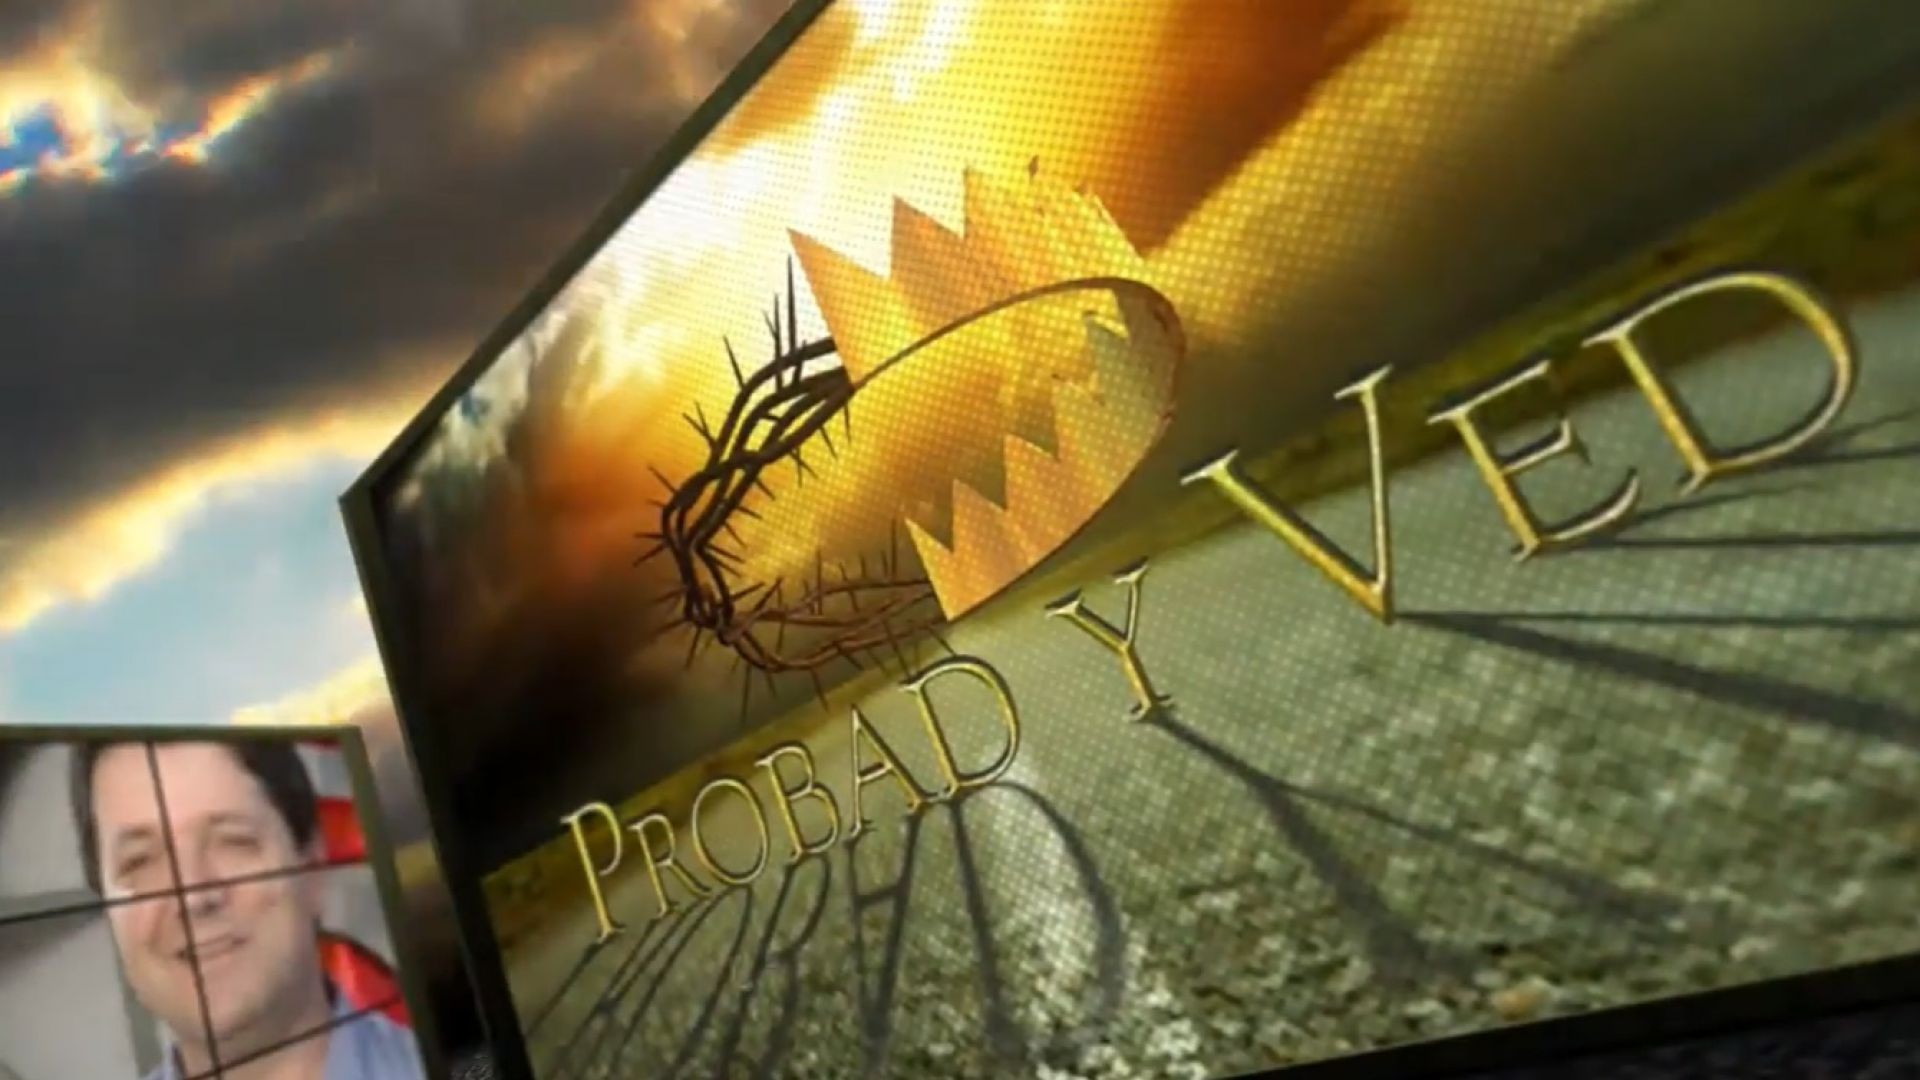 Probad y Ved 2012 - El sabado es sagrado